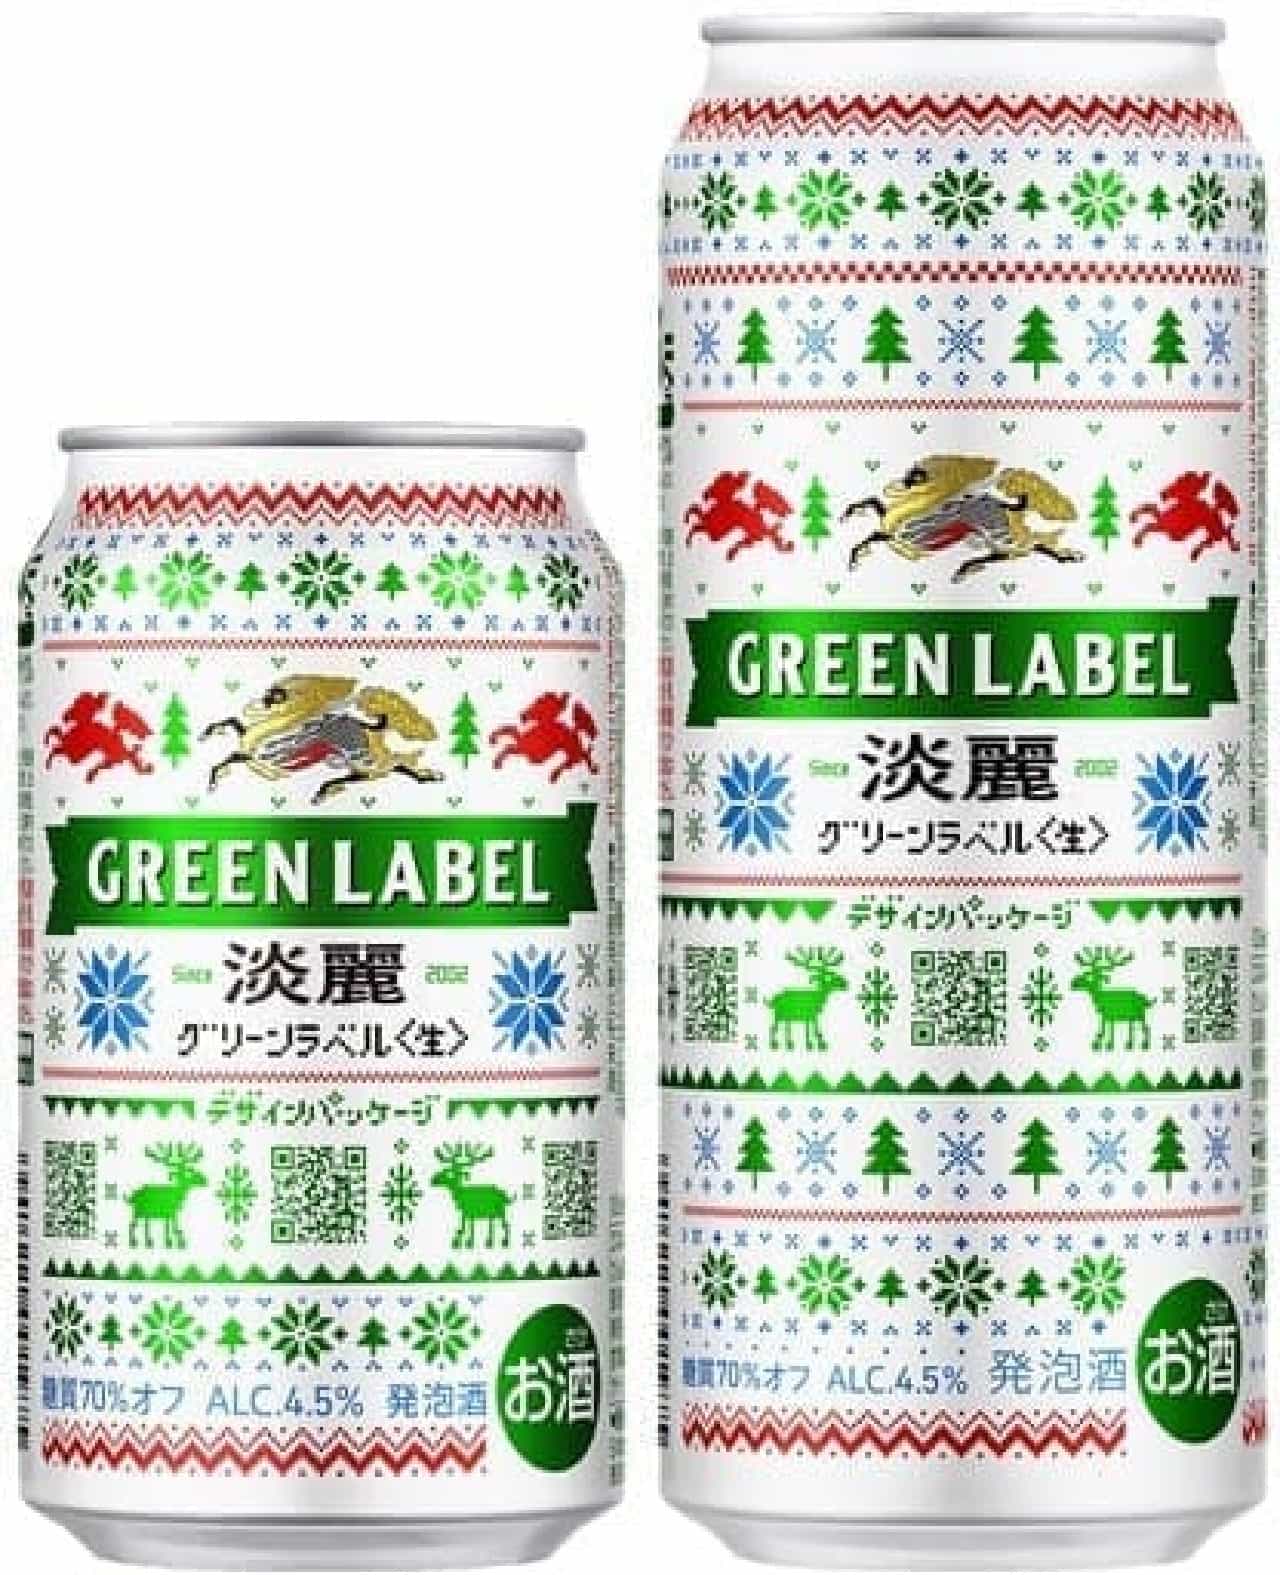 キリンビール「淡麗グリーンラベル あそべるデザイン缶」